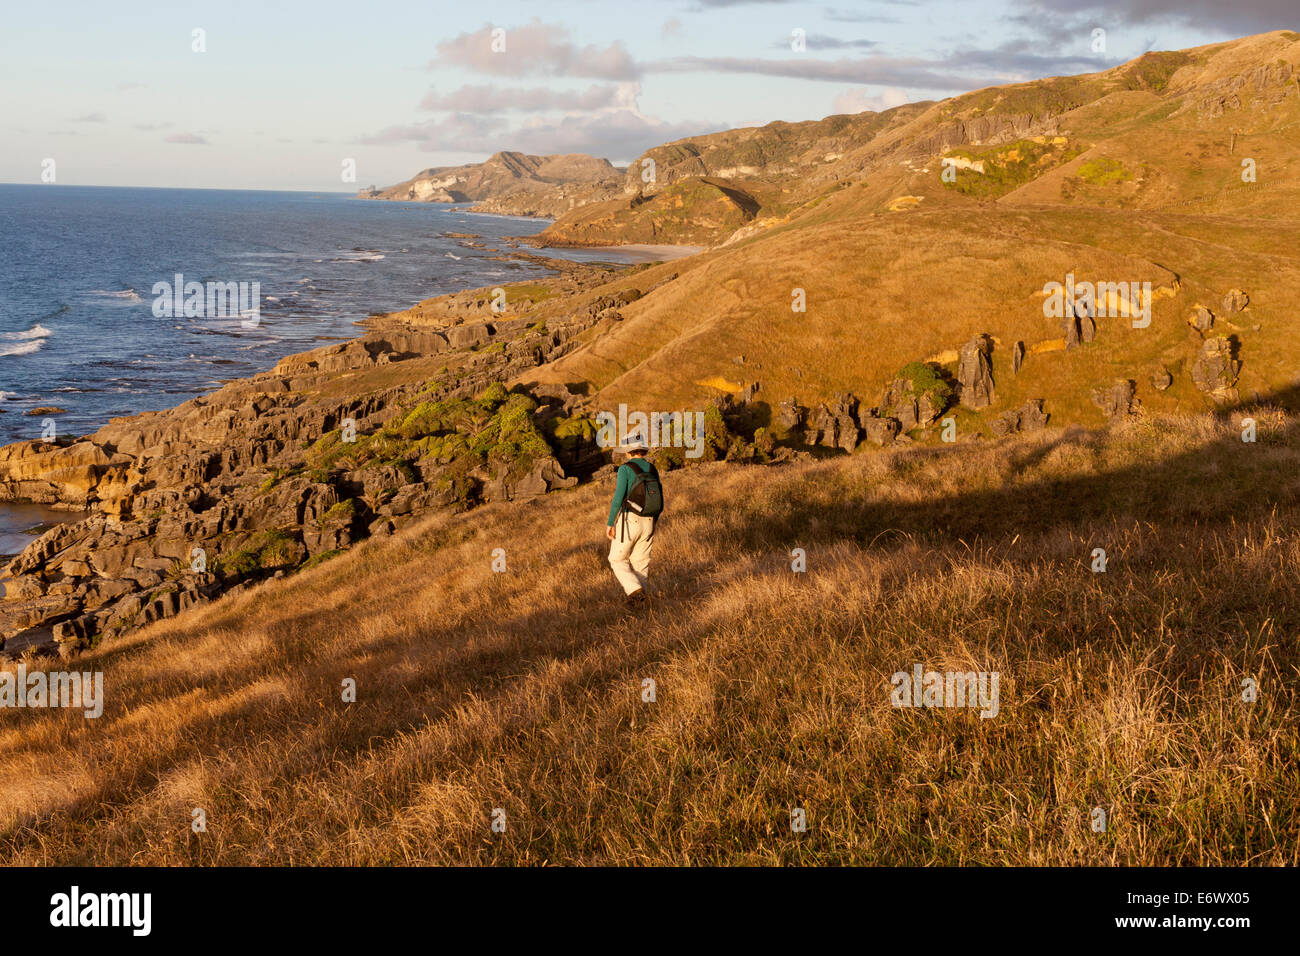 Caminante caminando por un paseo costero montañoso, tierras agrícolas privadas, Te Hapu, Región de Tasmania, Costa oeste, Isla del Sur, Nueva Zelanda Foto de stock